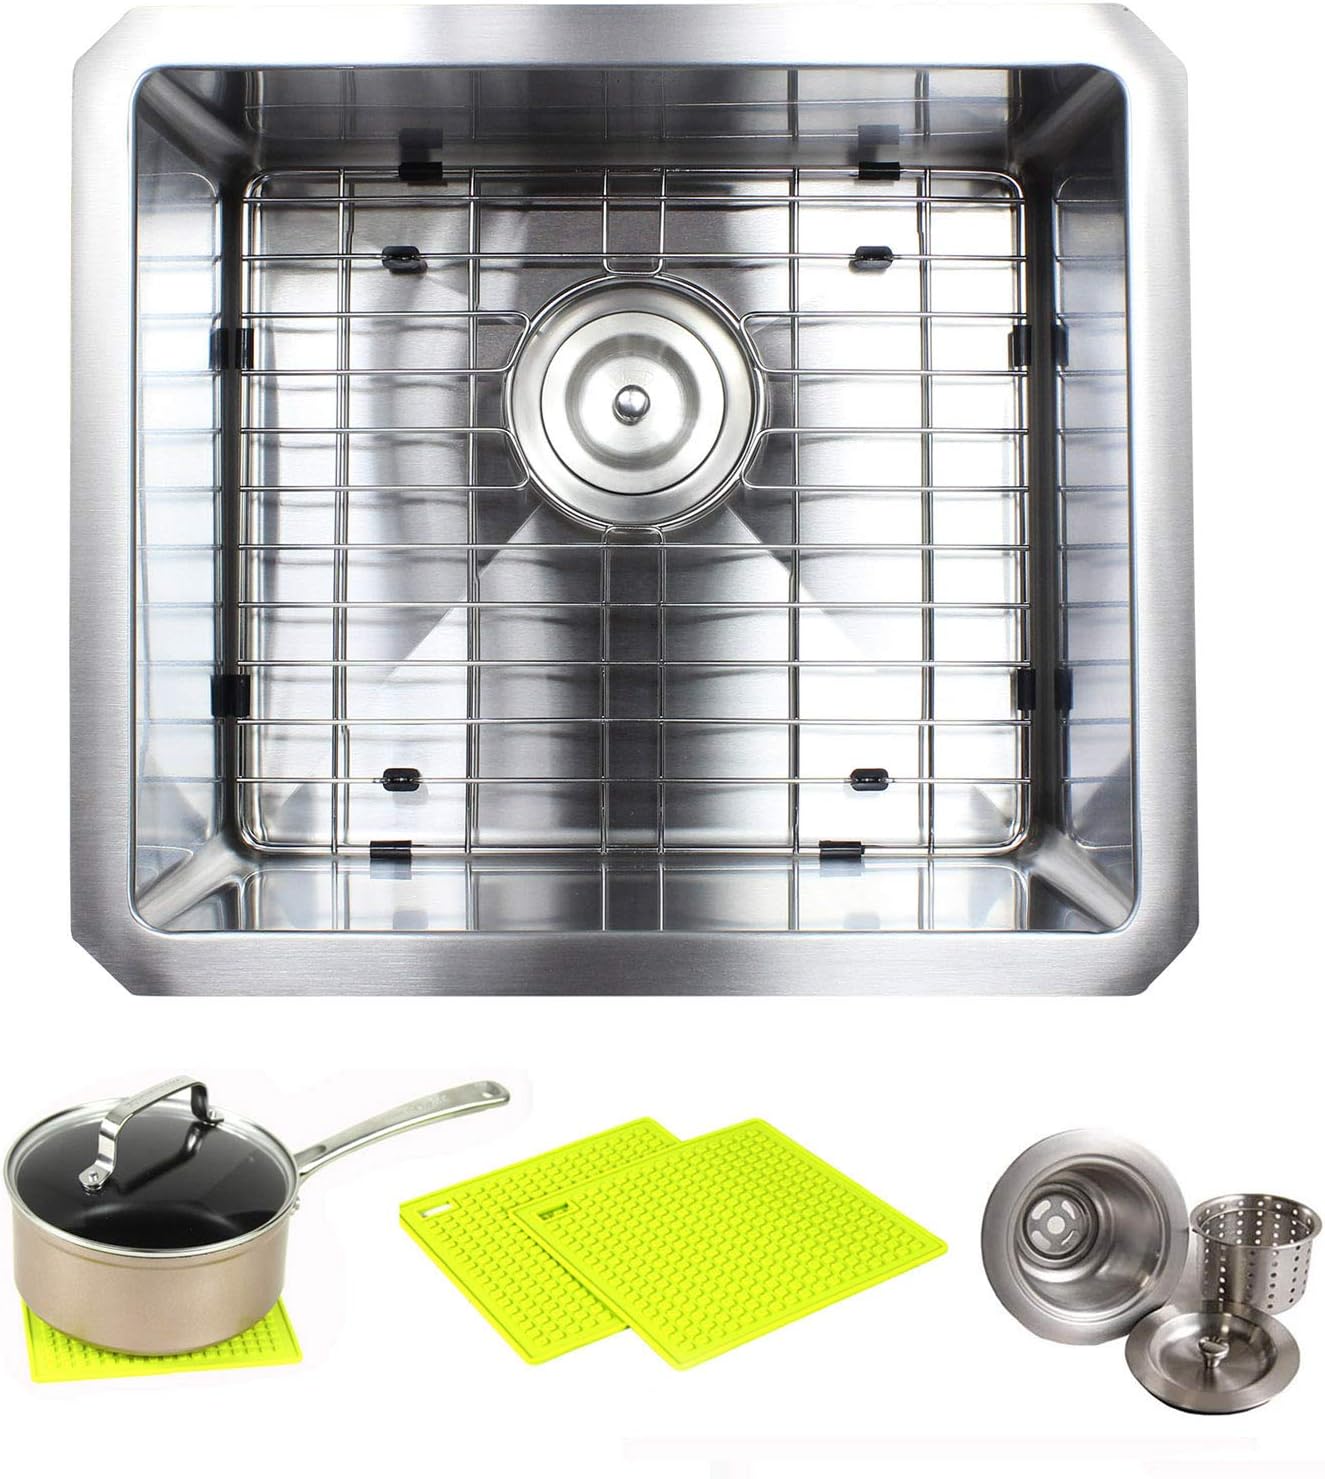 Premium 25 Inch Stainless Steel Kitchen Sink Package   25 Gauge Undermount  Single Bowl Basin   Complete Sink Pack Bonus Kitchen Accessories   Ideal ...